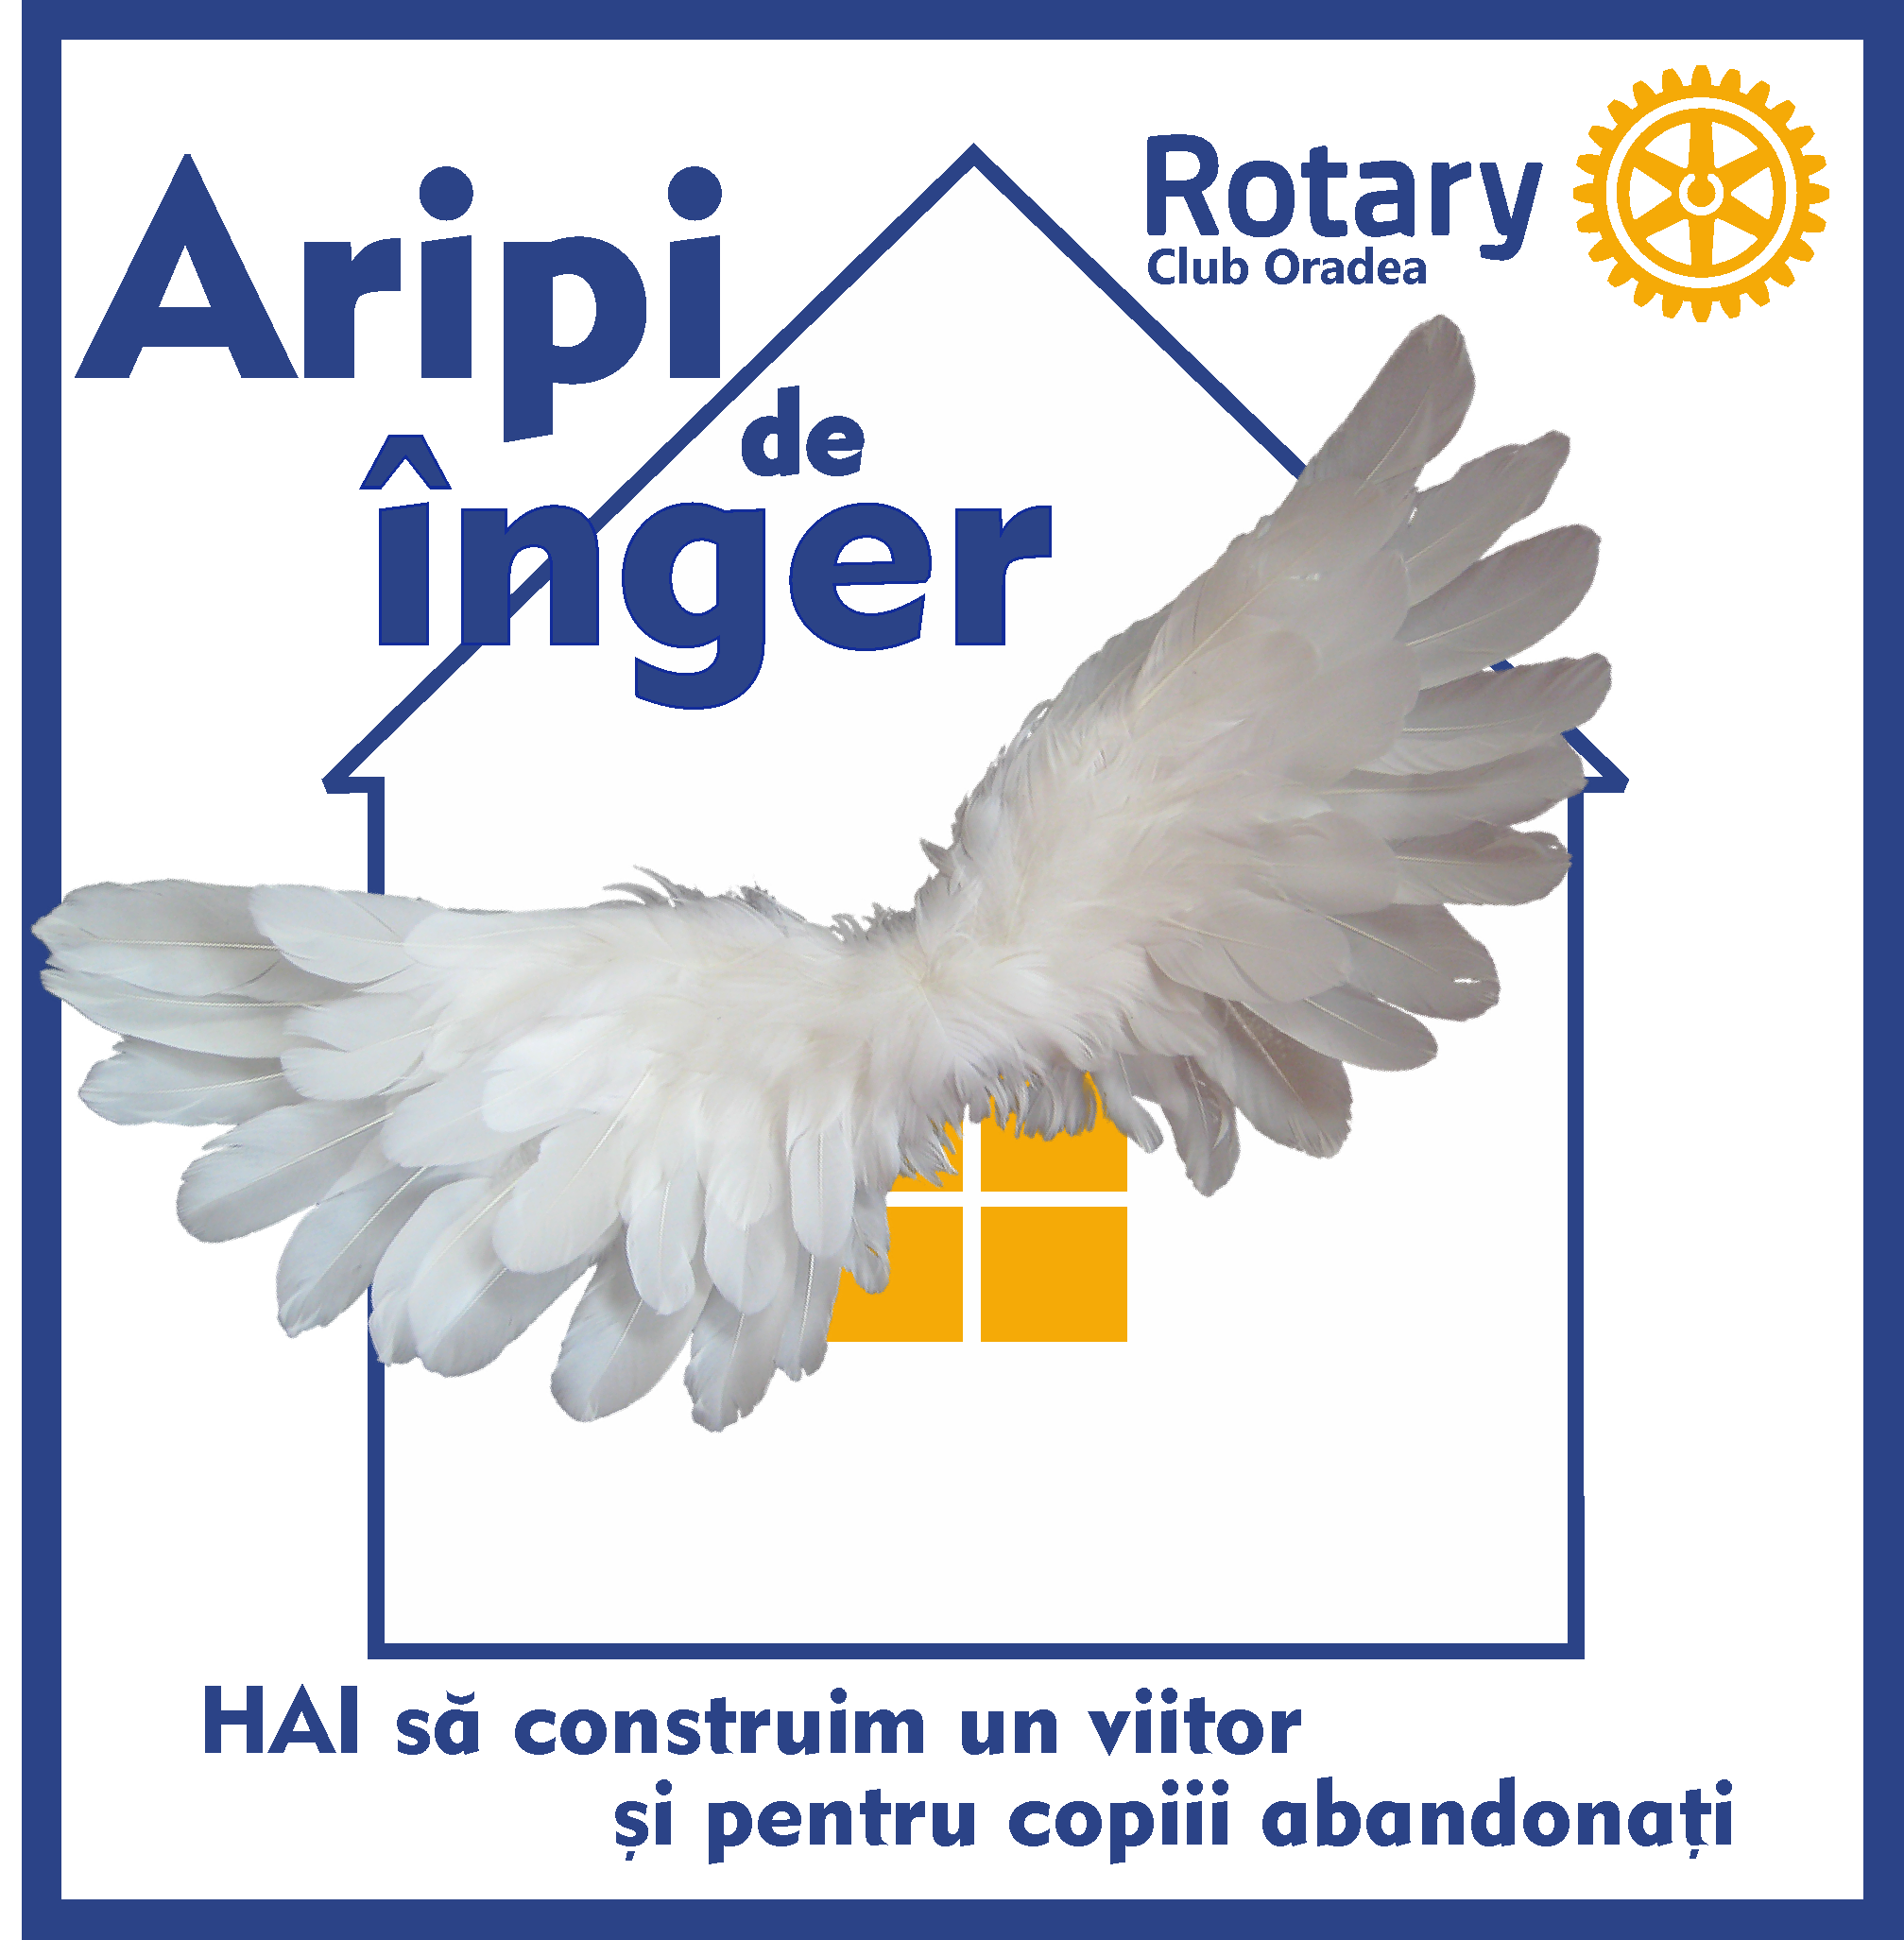 Clubul Rotary Oradea susține ”Aripi de înger”